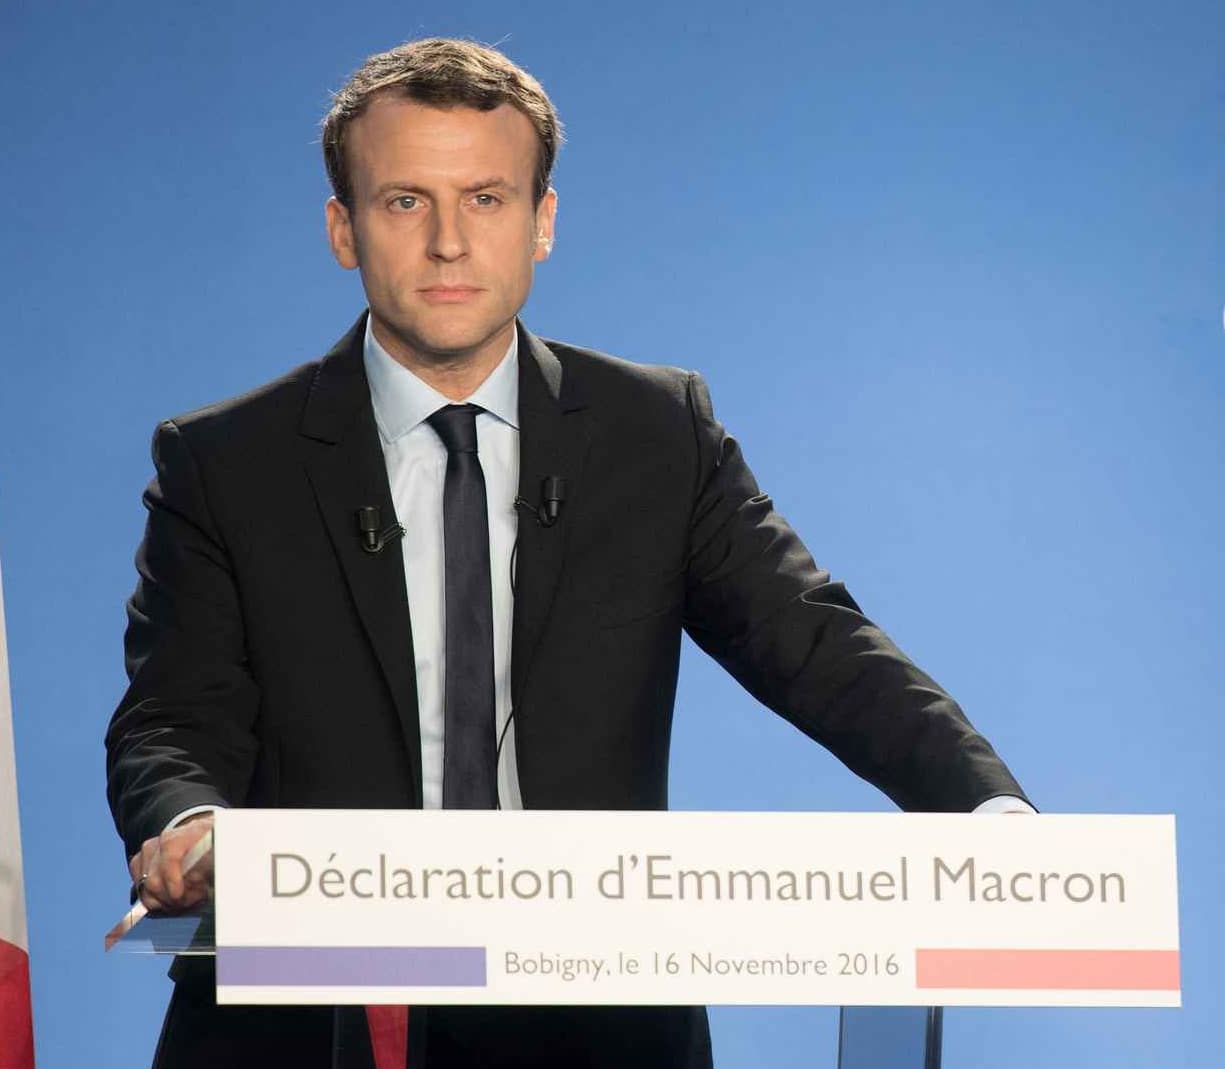 Emmnuel Macron au meeting de Bobigny - 16 novembre 2016